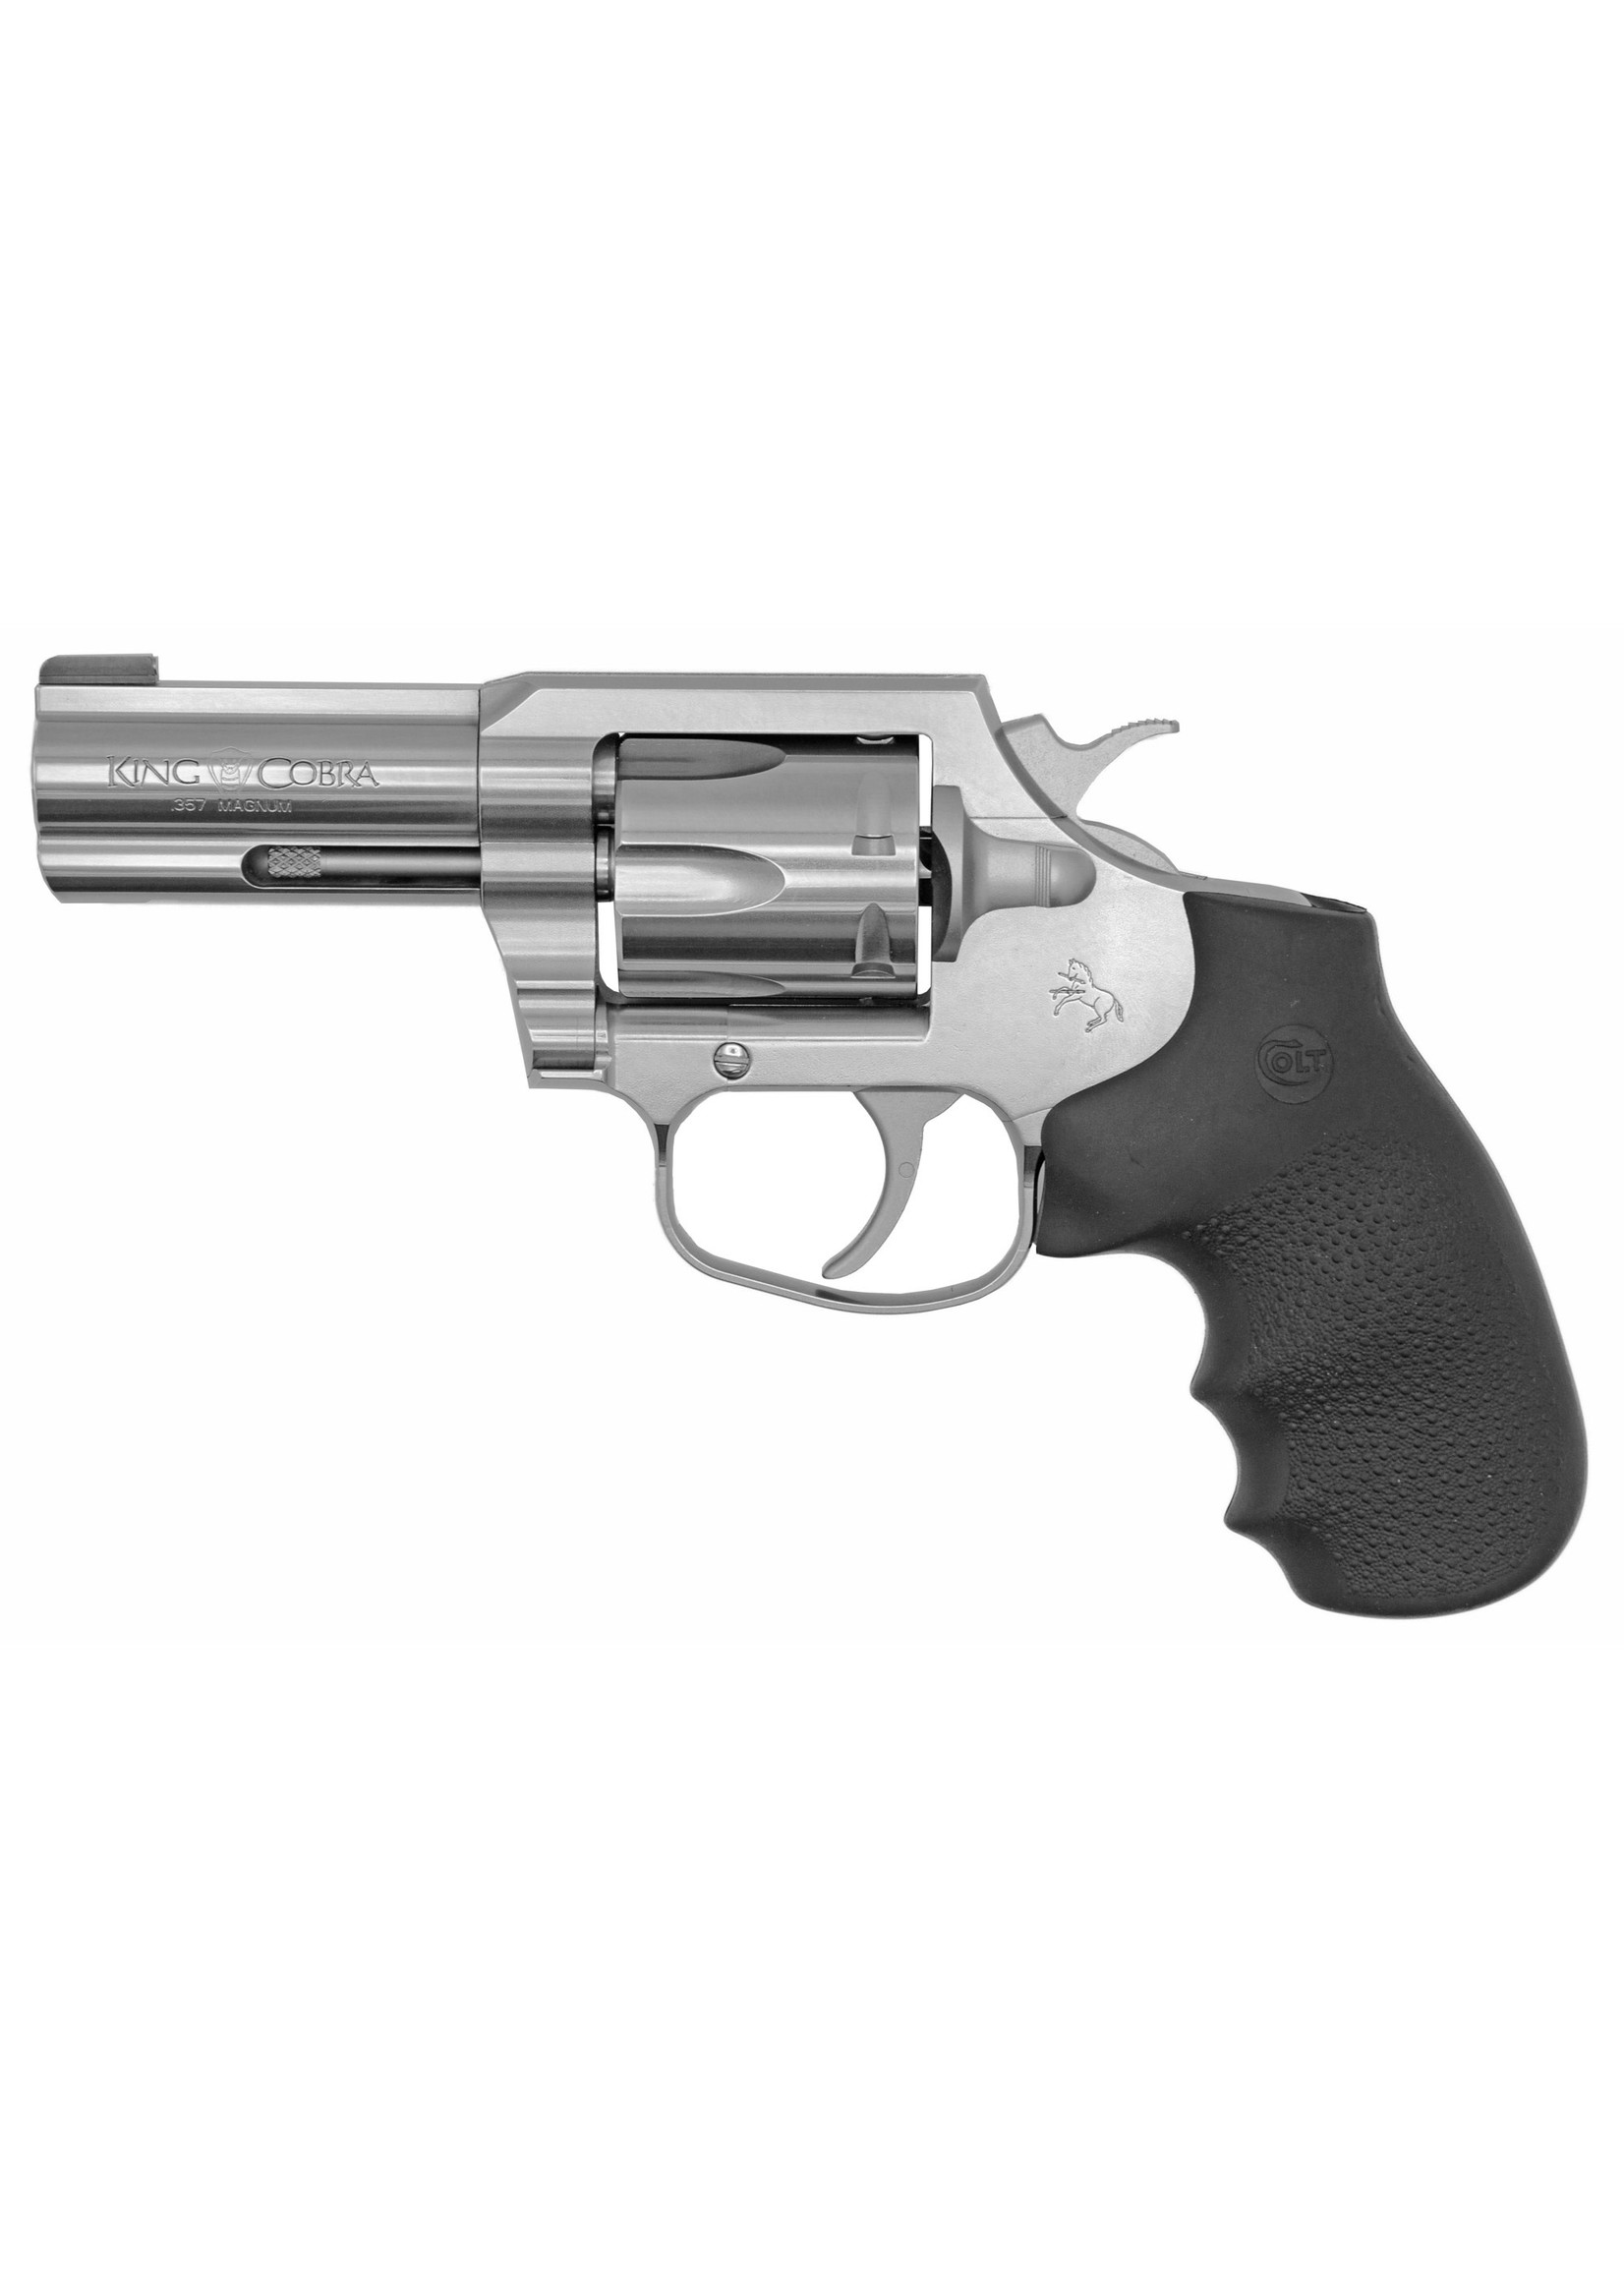 Colt Mfg Colt King Cobra Revolver 357 Mag, 6rd, 3", brushed stainless, black Hogue grip